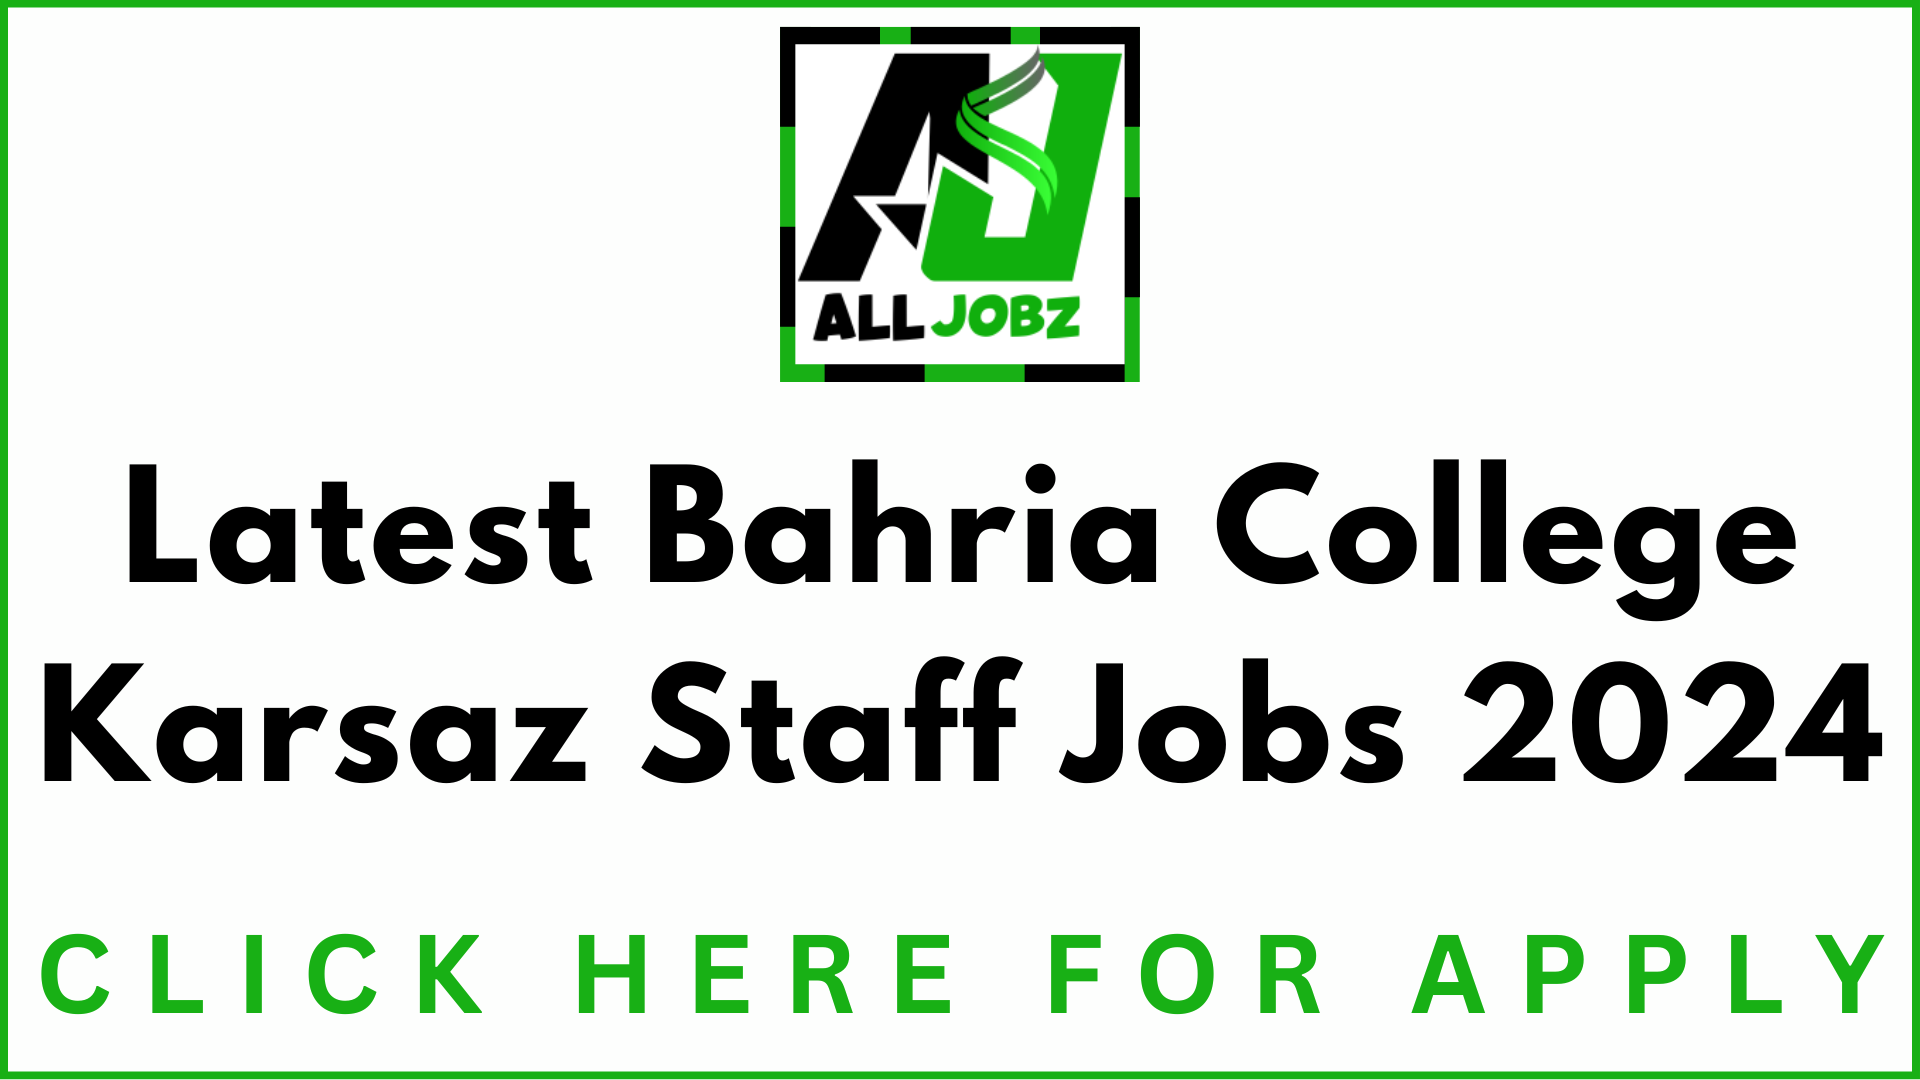 Latest Bahria College Karsaz Staff Posts 2024, Staff Required At Bahria College Karsaz Karachi, Bahria College Karsaz Jobs Salary, Bahria College Karsaz Jobs For Female, Bahria College Jobs, Bahria College Karsaz Jobs 2024, Bahria College Karsaz Job Application Form, Bahria College Jobs 2024, Bahria College Karsaz Jobs 2024 For Female, Bahria College Karsaz Jobs 2024 Application Form, Bahria College Jobs Karachi, Bahria College Jobs 2024, Lecturer Jobs In Karachi 2024,